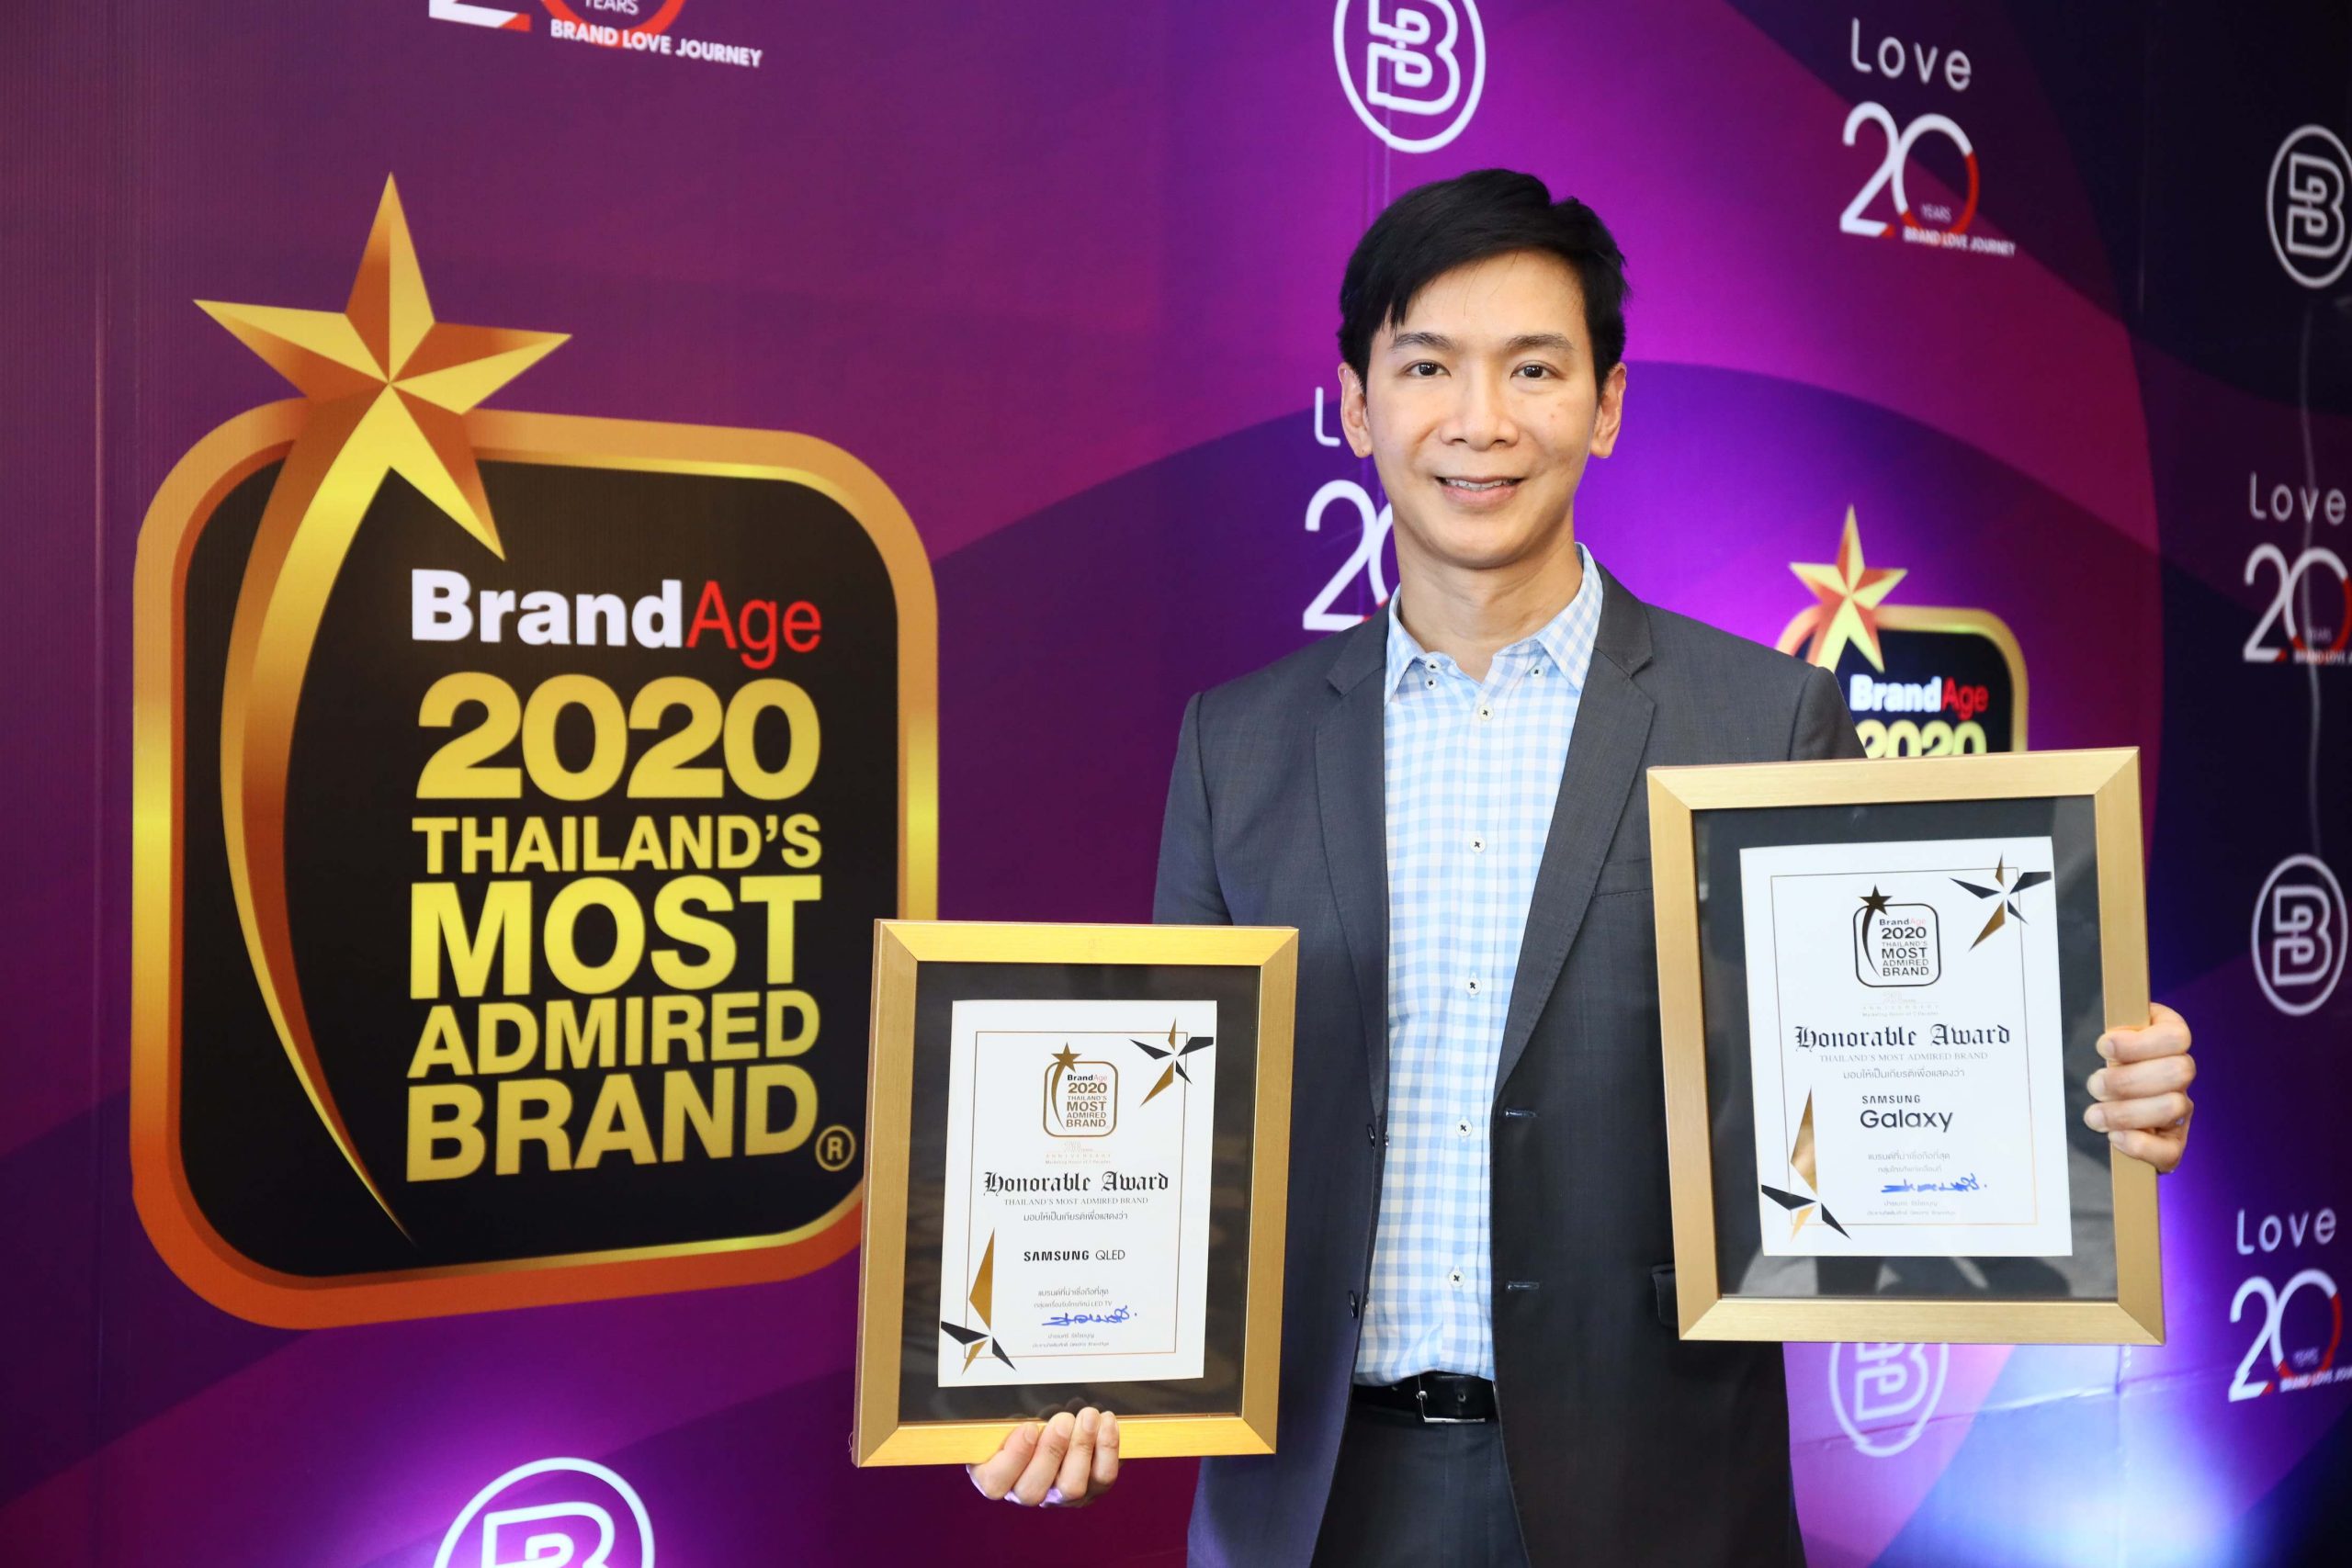 ซัมซุง ครองสุดยอดแบรนด์ที่น่าเชื่อถือที่สุด คว้า 2 รางวัลจากเวที Thailands Most Admired Brand ในกลุ่มสมาร์ทโฟนและทีวี ประจำปี 2020